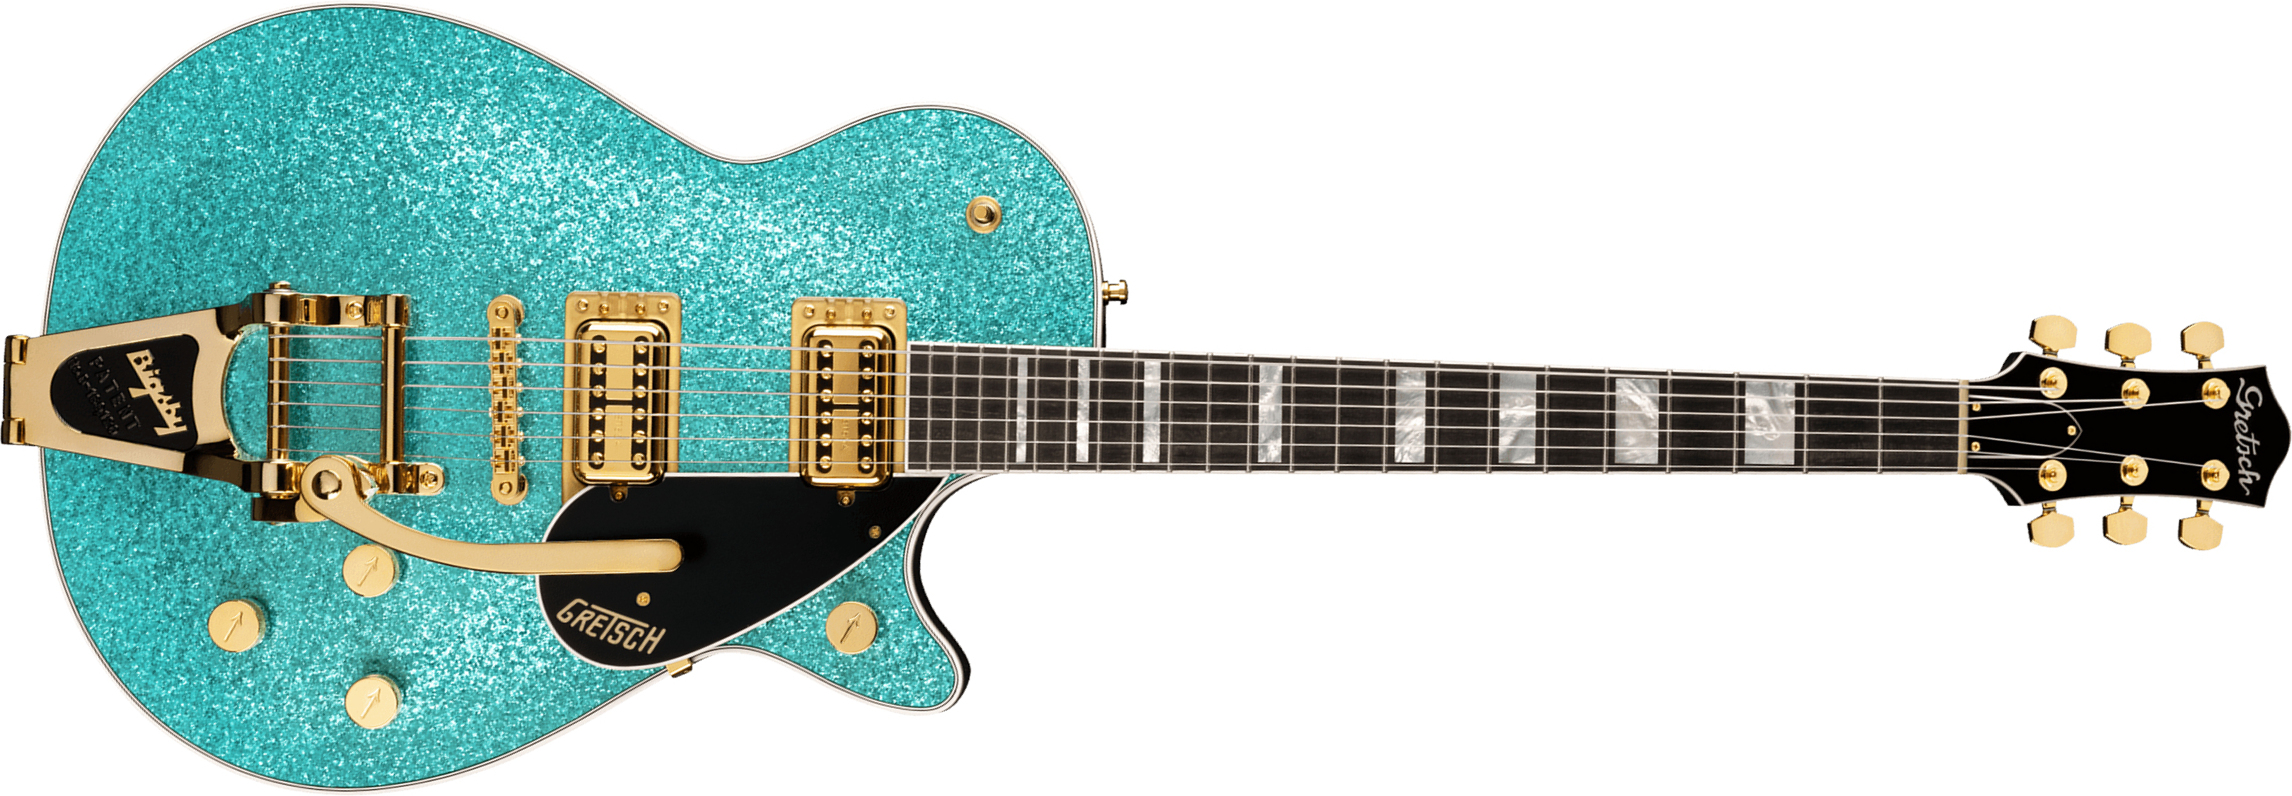 Gretsch G6229tg Jet Bt Players Edition Pro Jap 2h Trem Bigsby Rw - Ocean Turquoise Sparkle - Enkel gesneden elektrische gitaar - Main picture